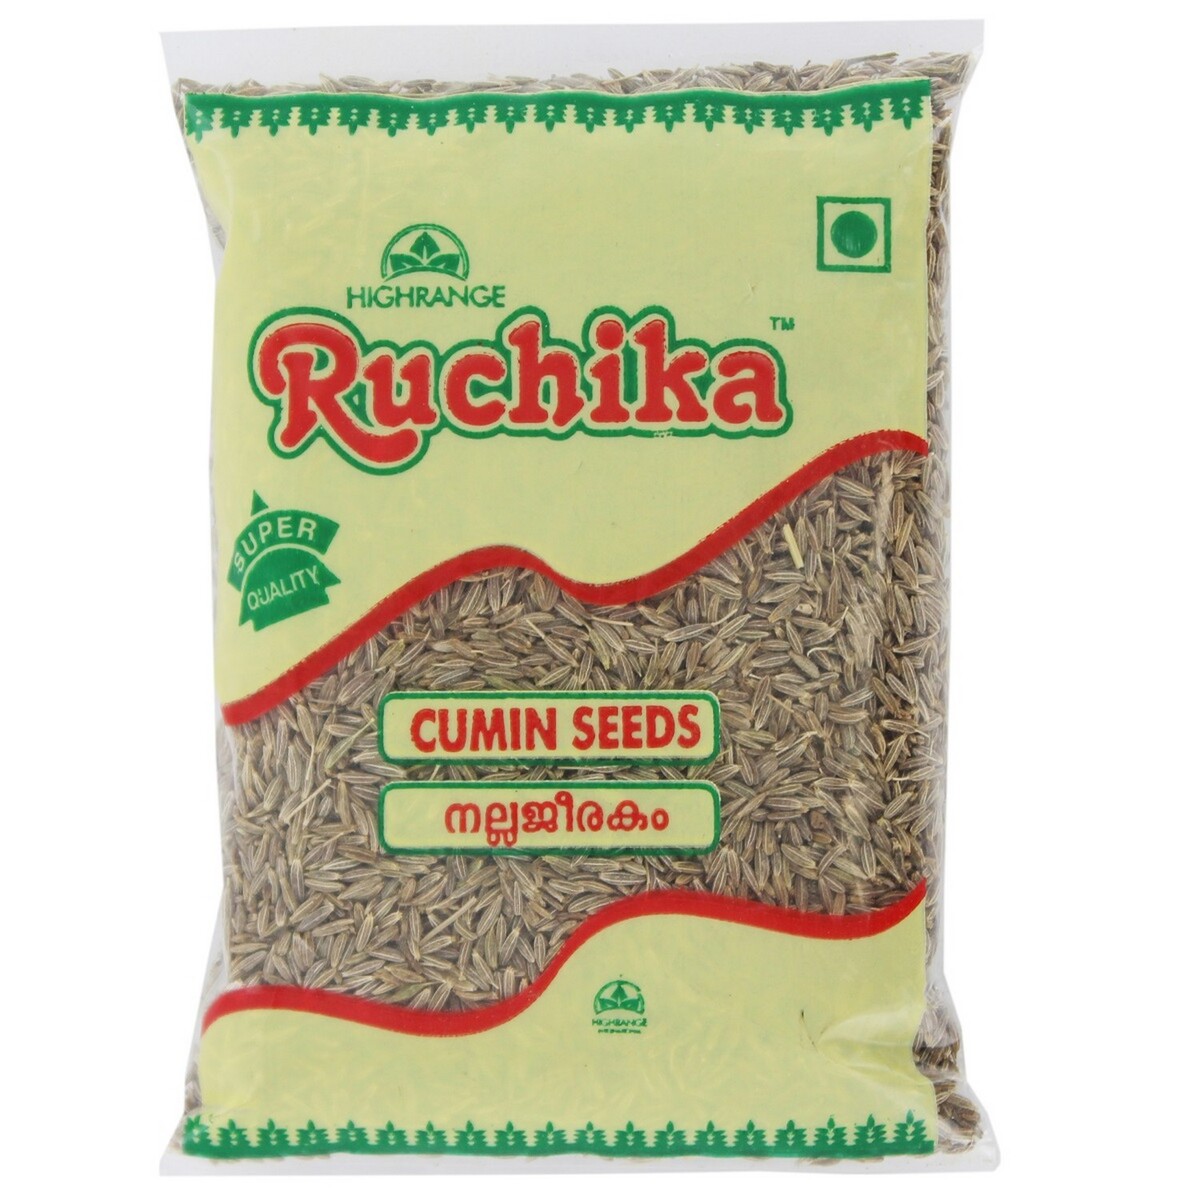 Ruchika Cumin Seeds 100g